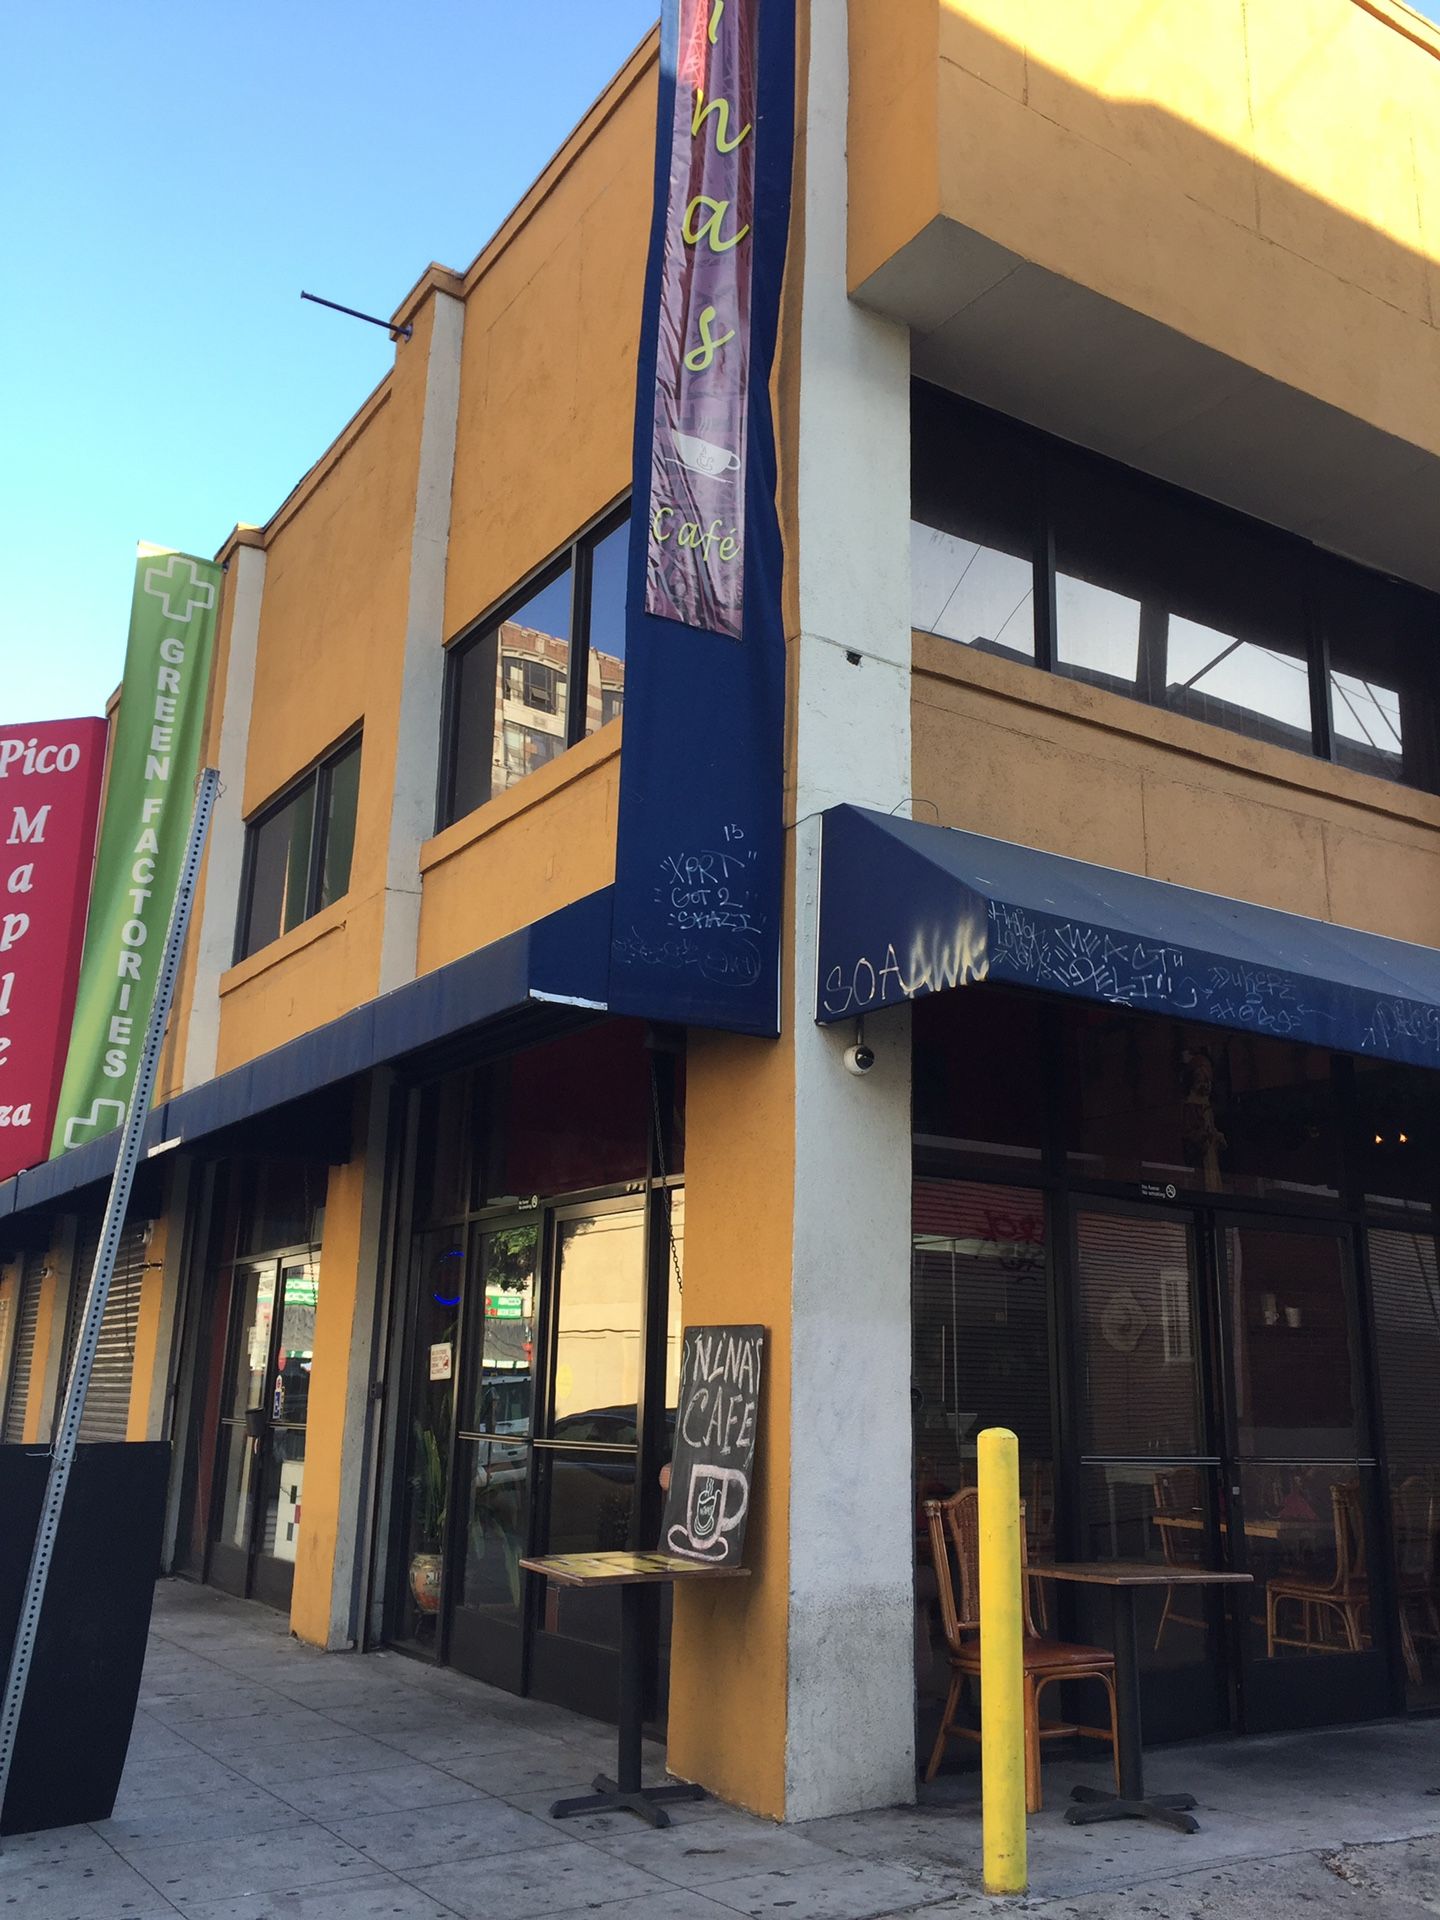 Downtown LA restaurant for sale